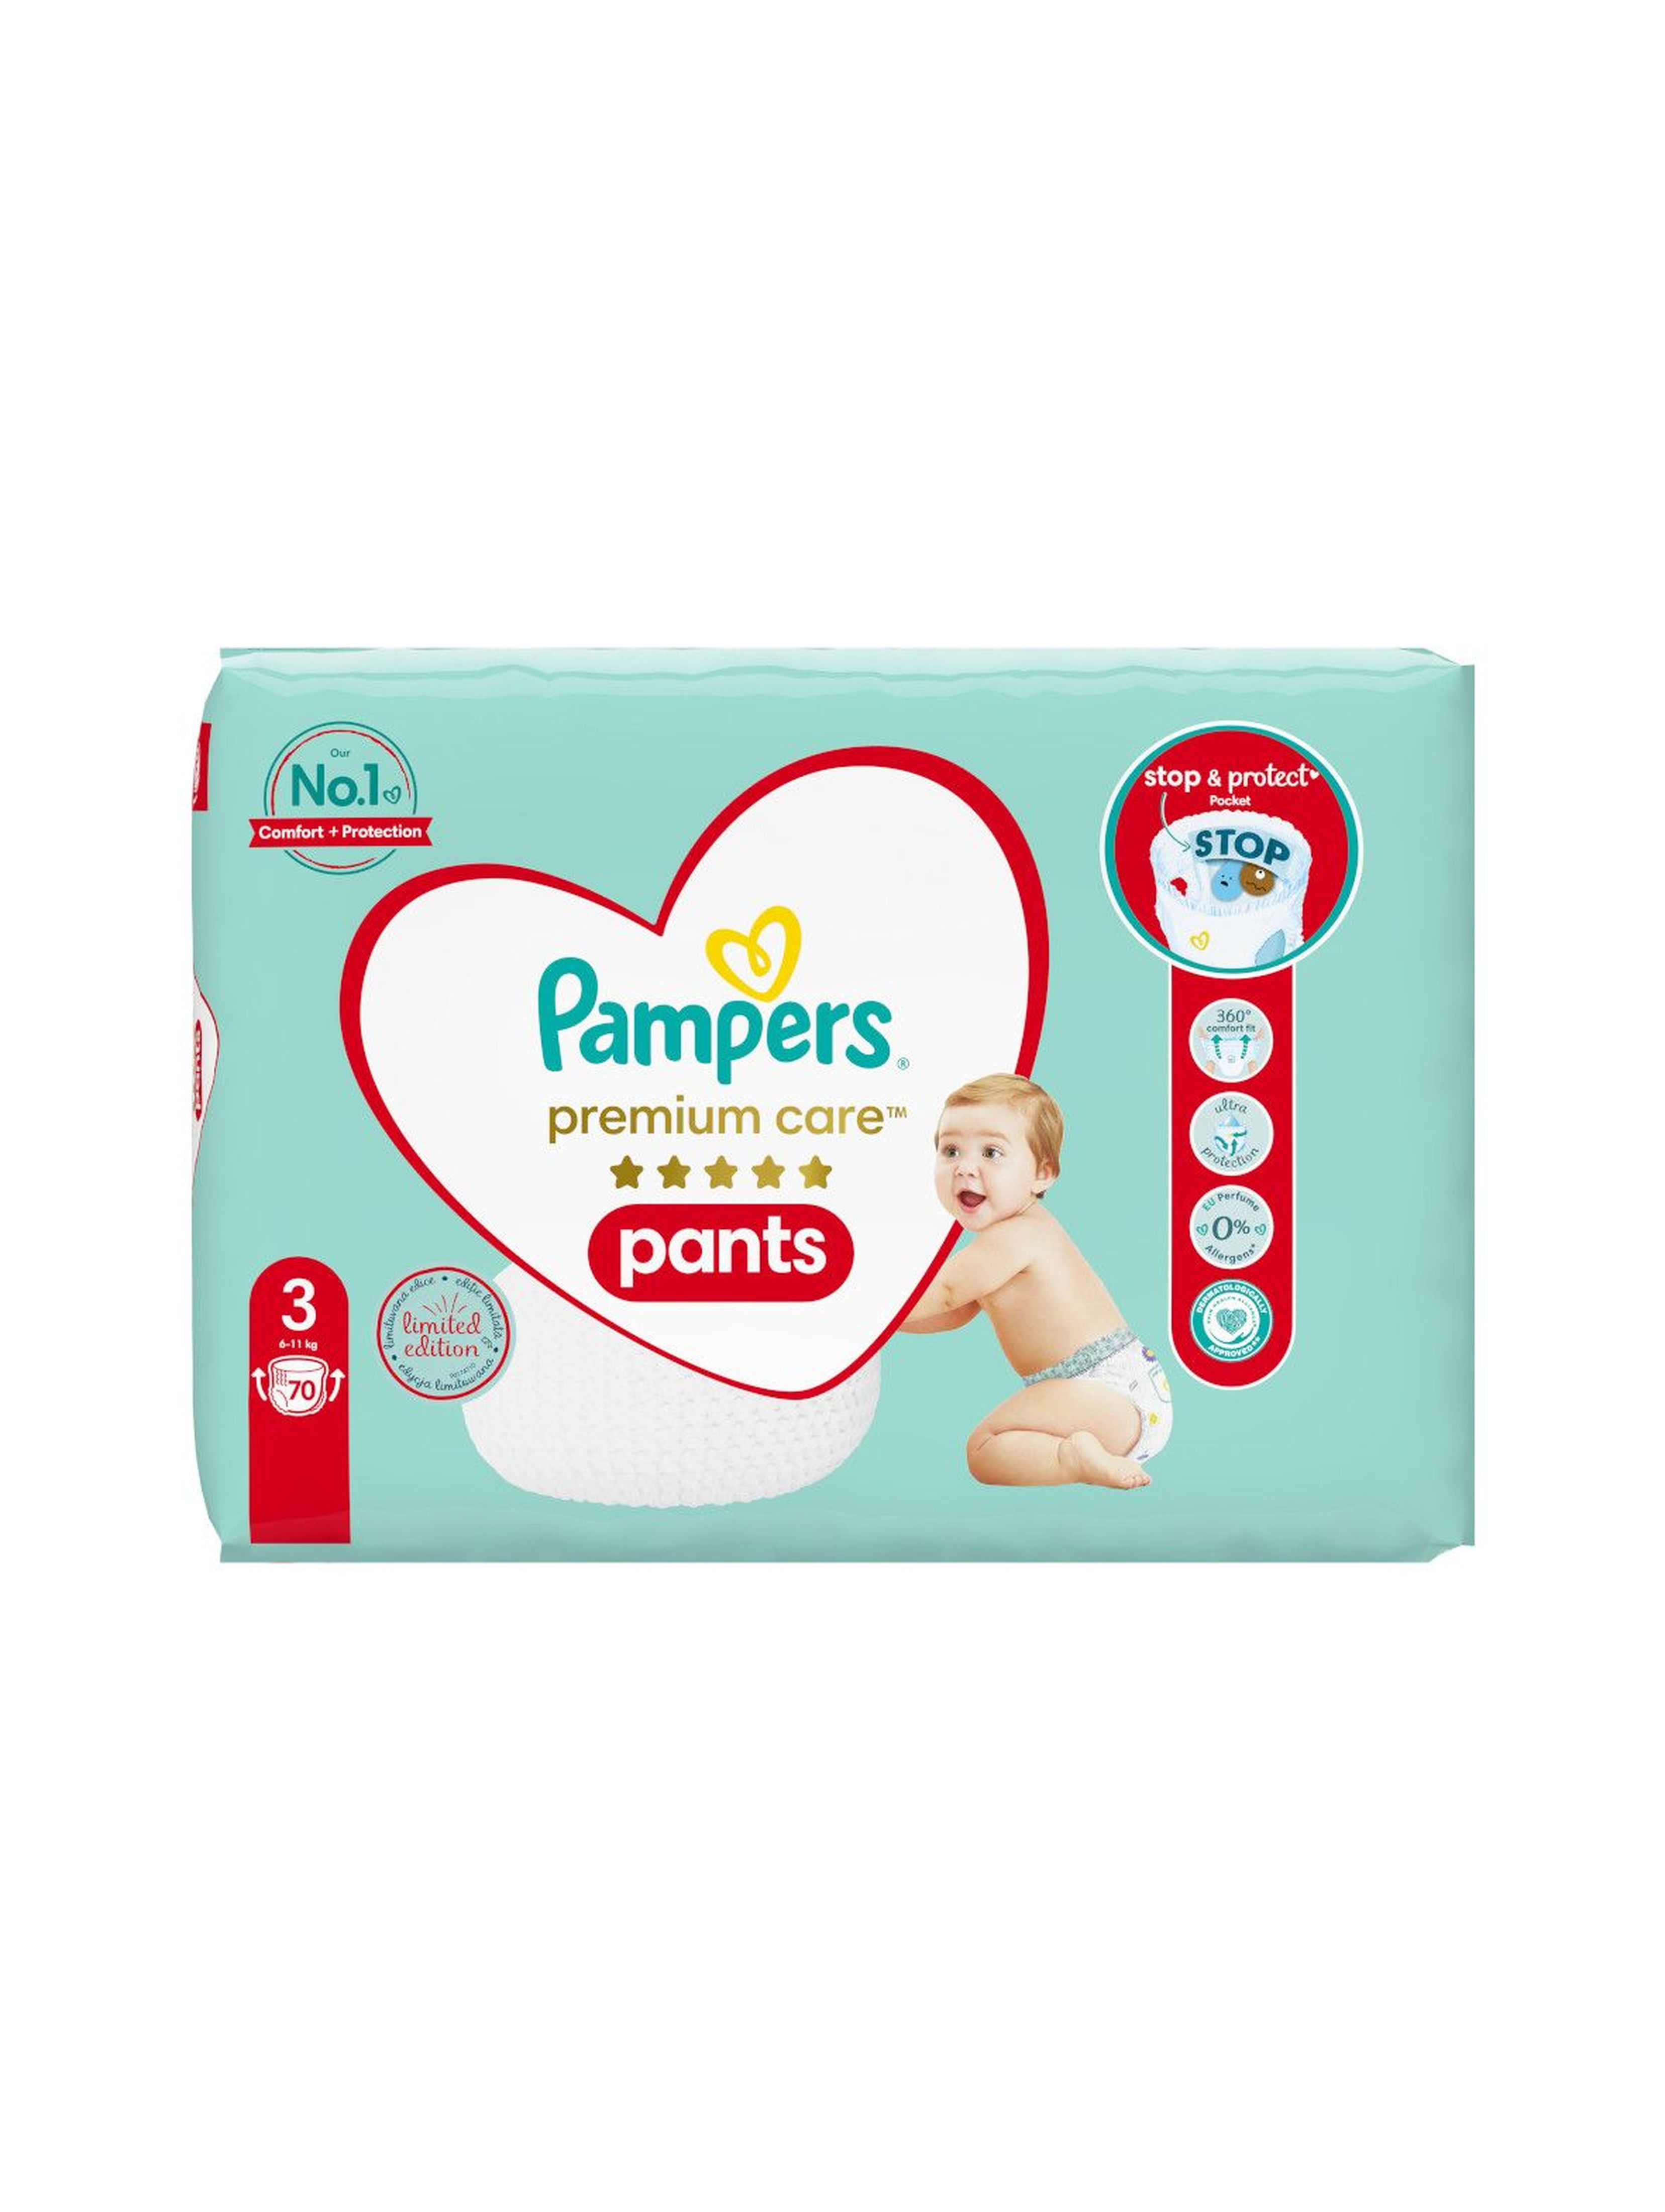 Pampers Premium Care Pants rozm 3, 70 szt pieluchomajtek